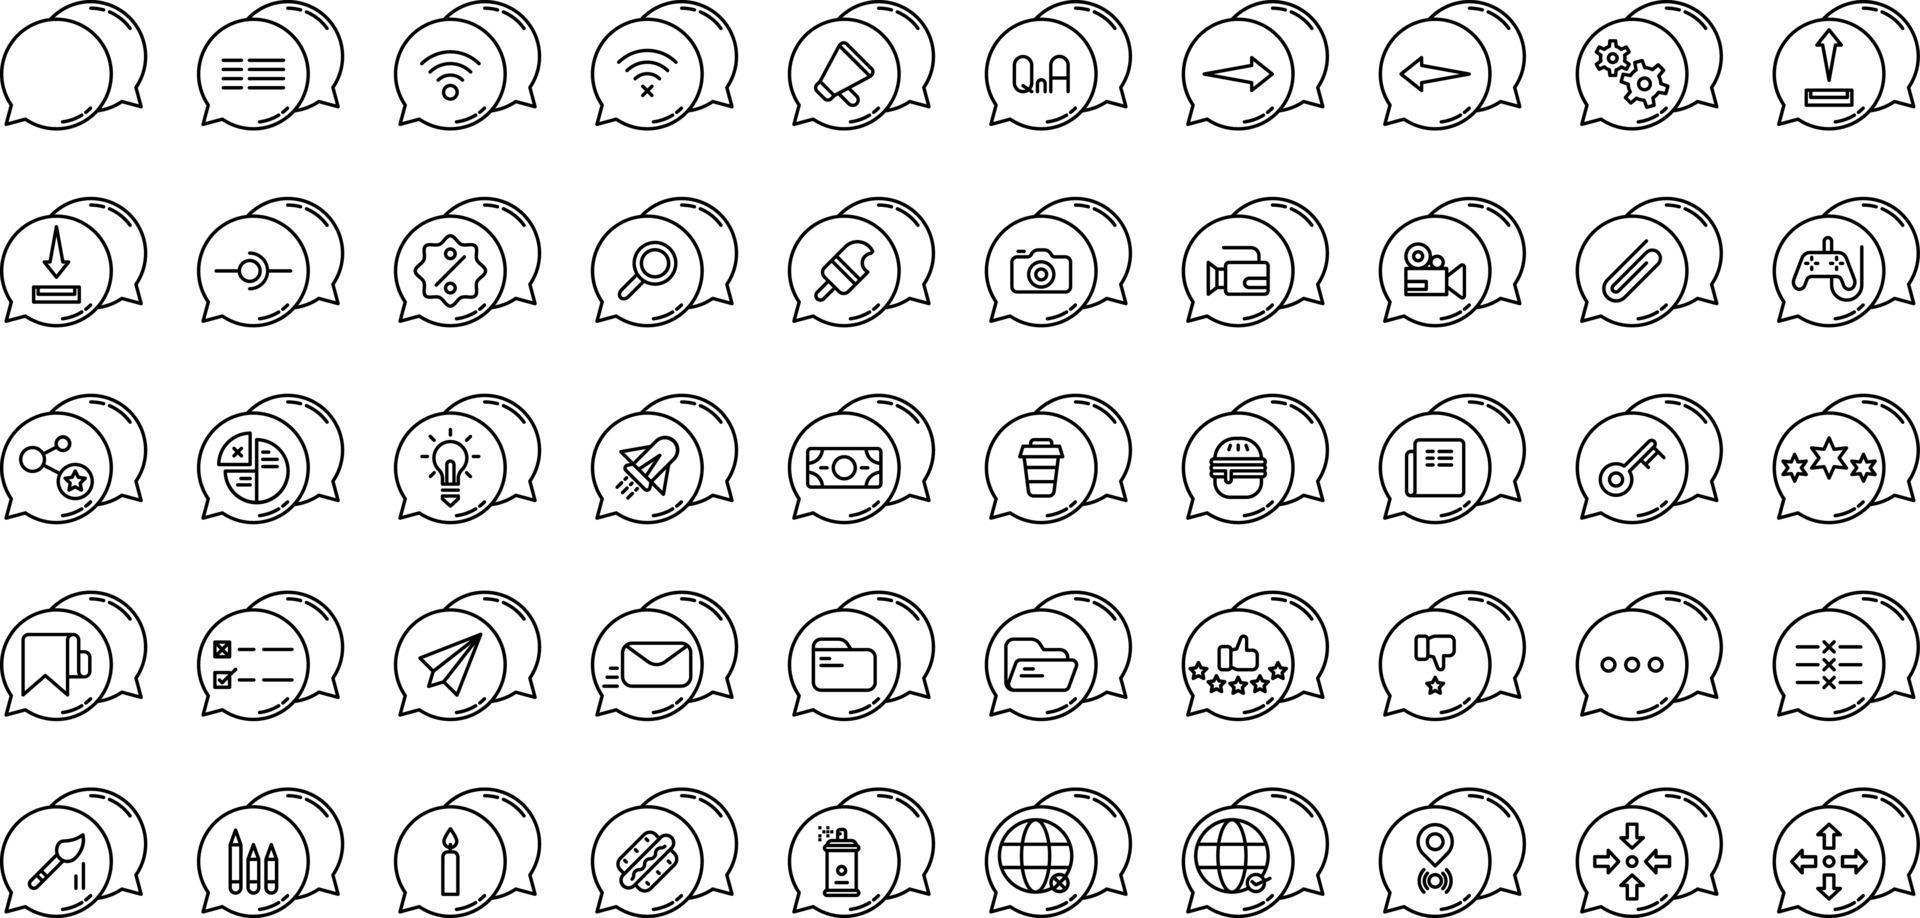 uppsättning pratballonger och verktyg ikoner på transparent bakgrund vektor